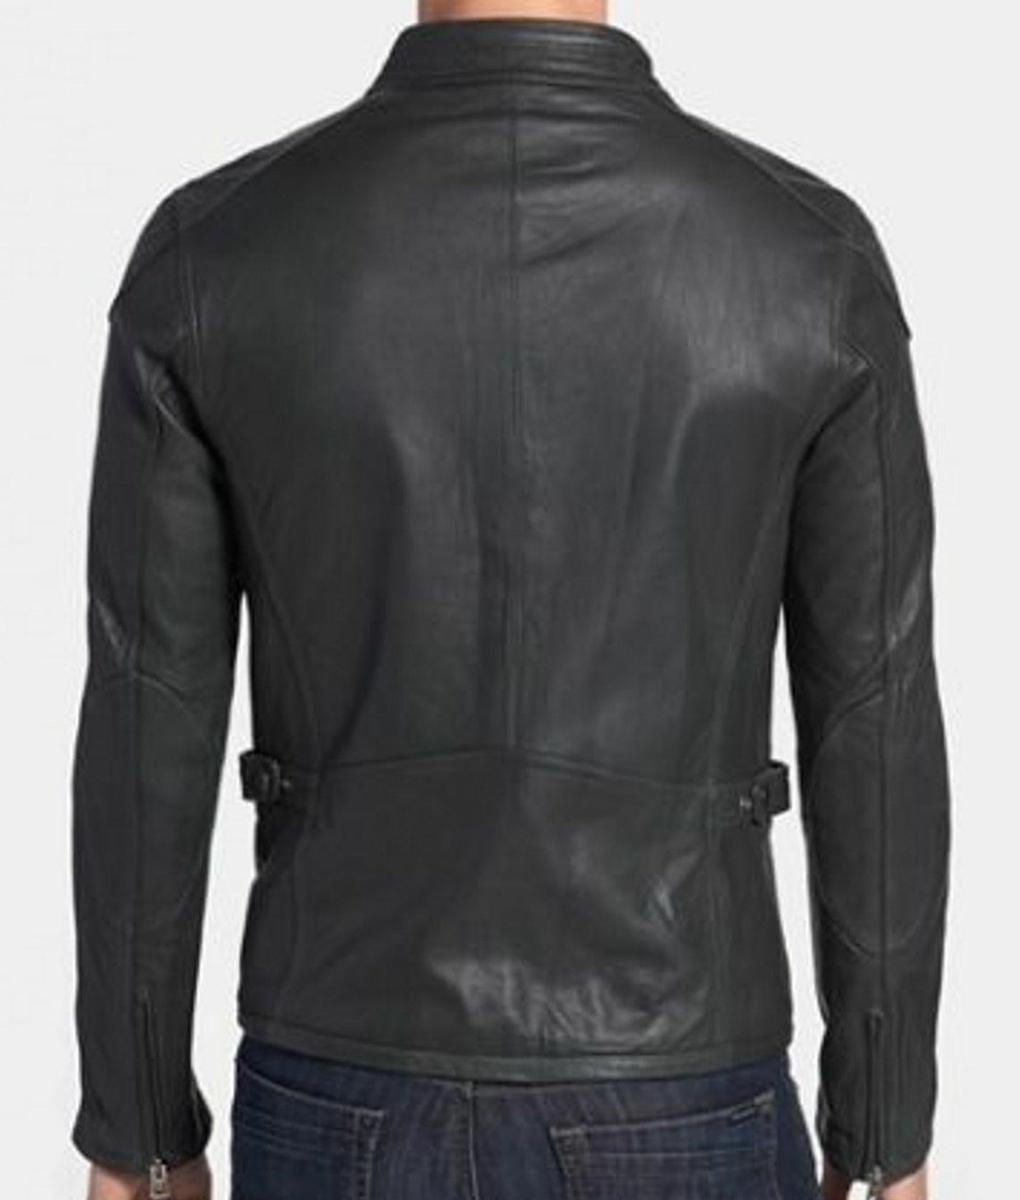 Gerard-Butler-Biker-Leather-Jacket-1